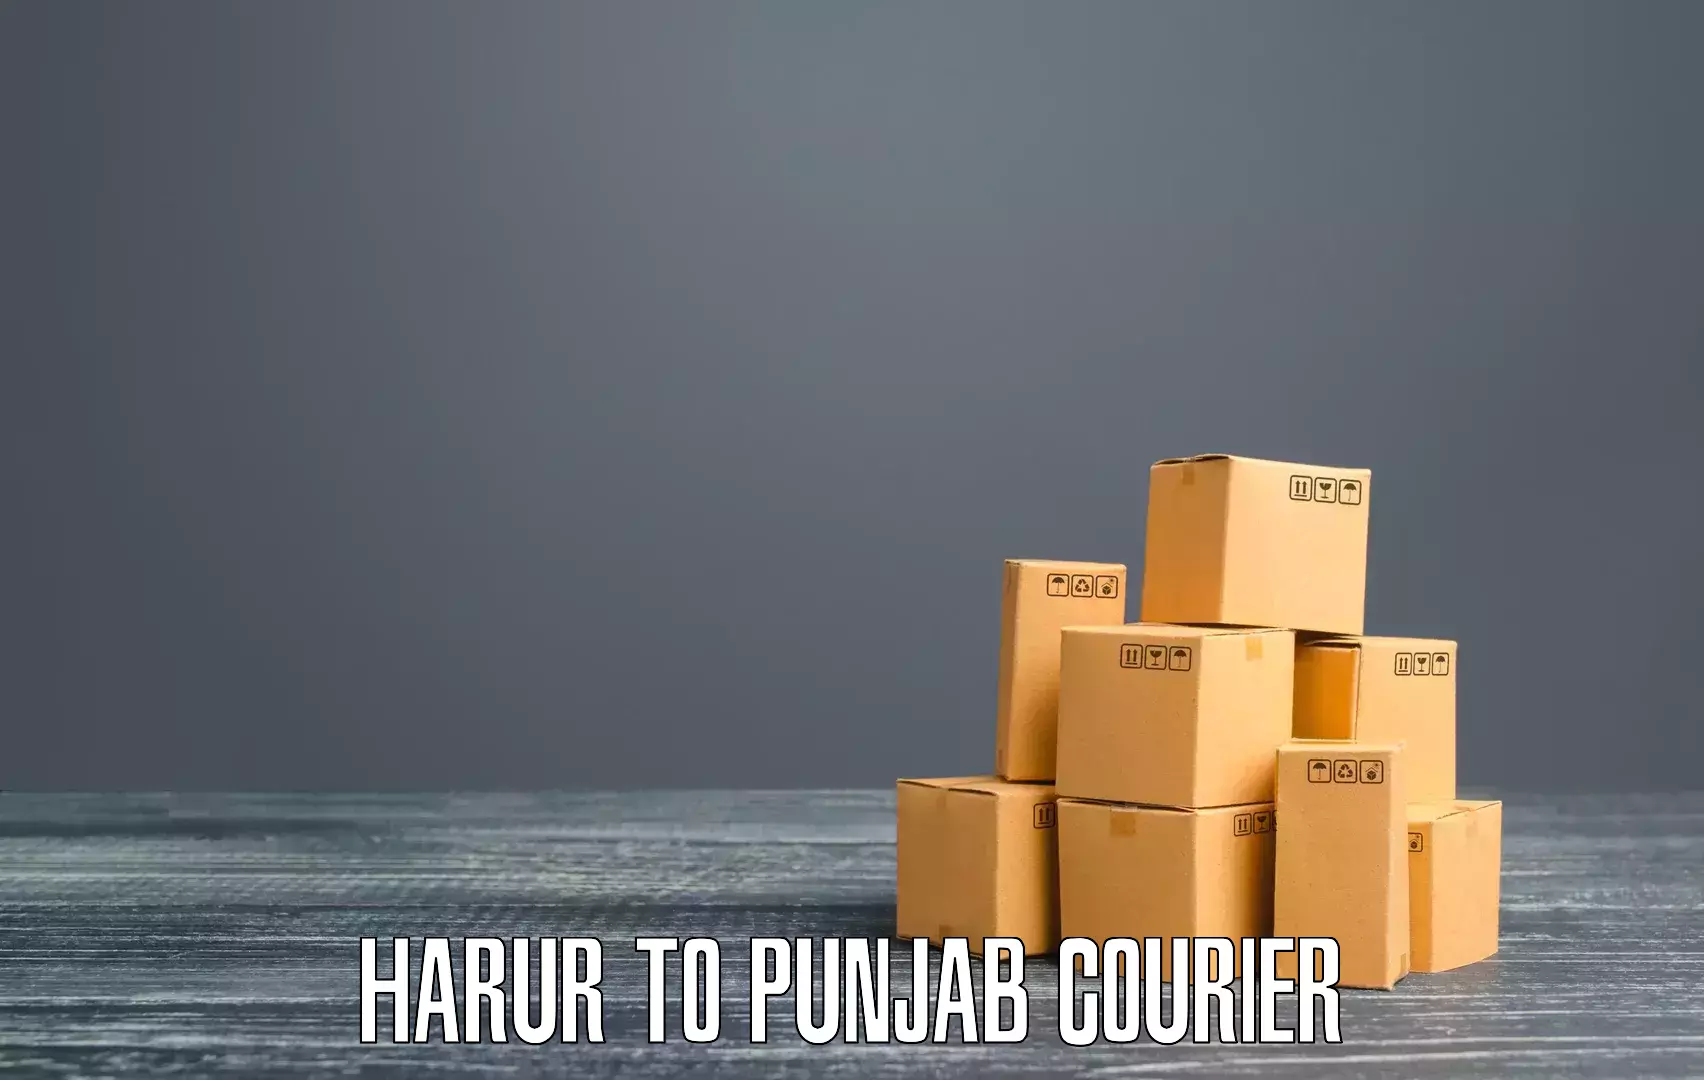 Premium courier services Harur to Moga